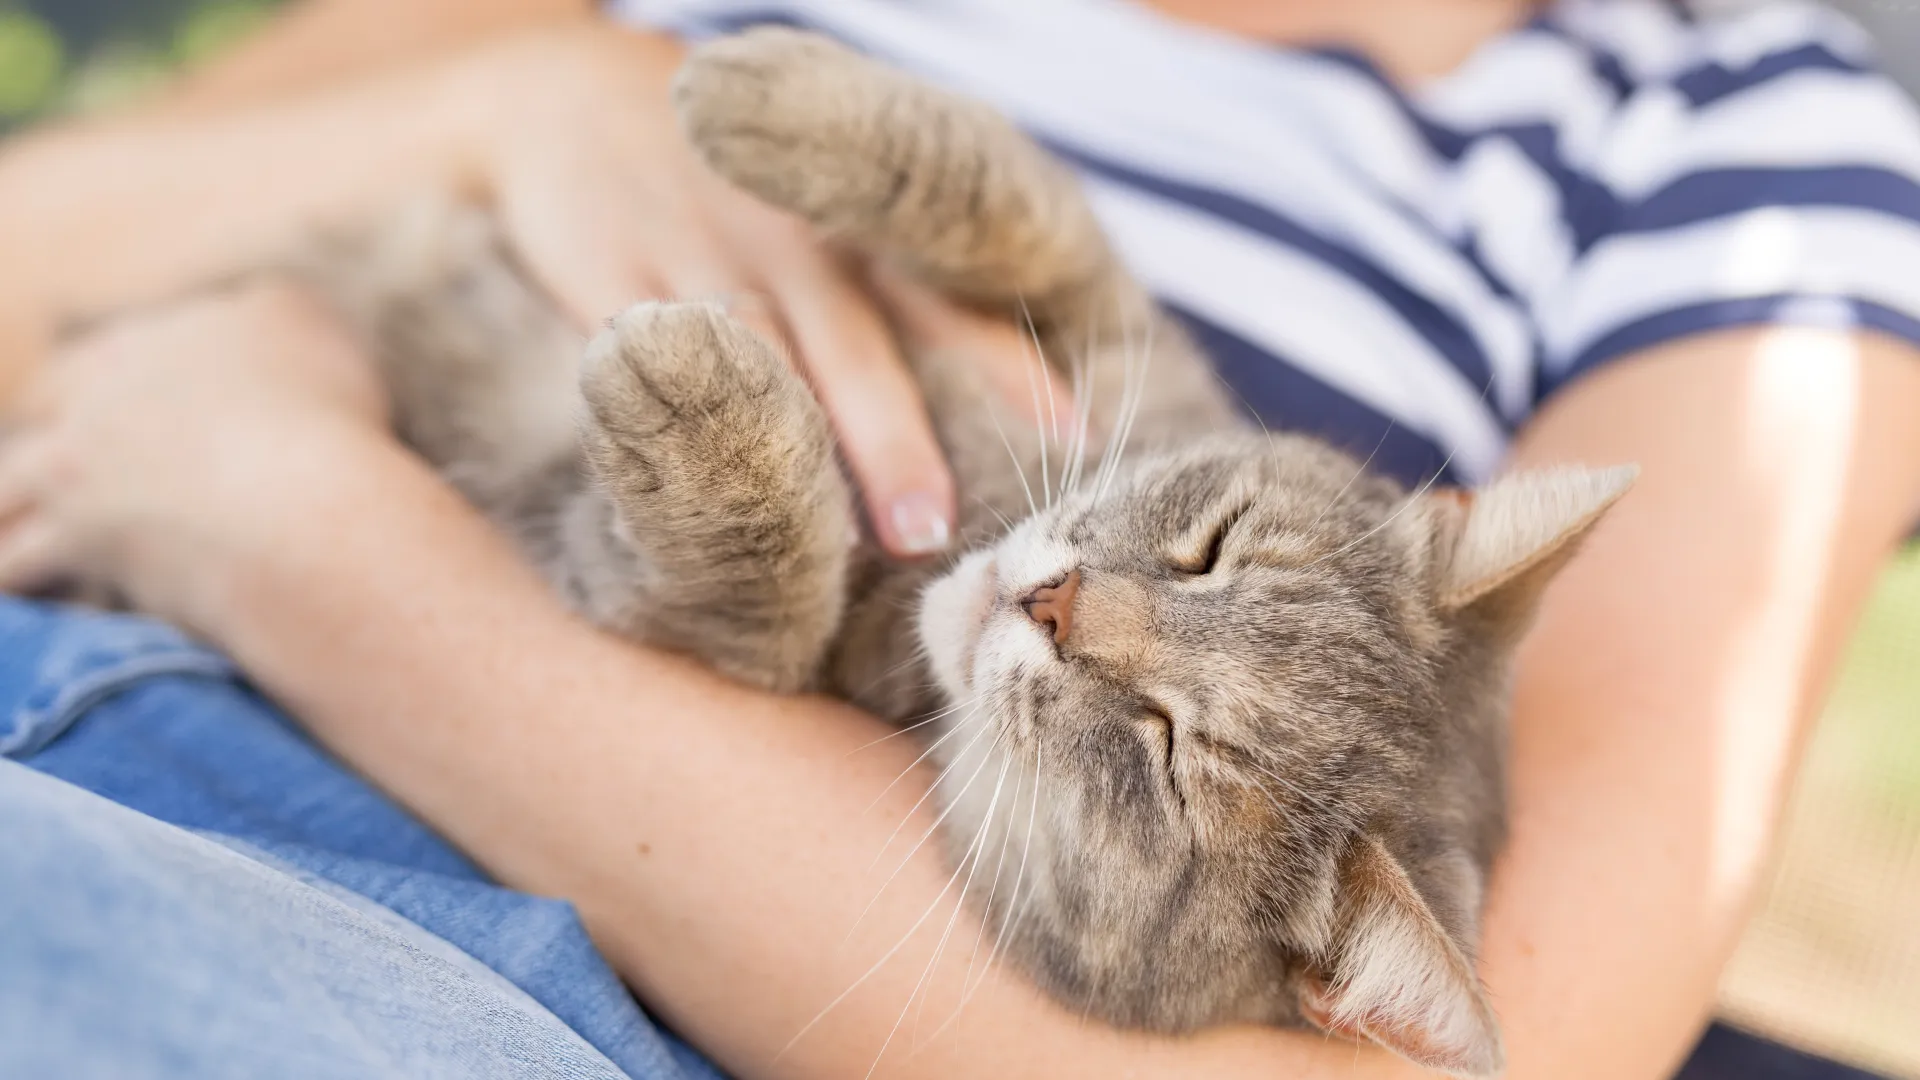 Tickling a cat. Photo: Shutterstock